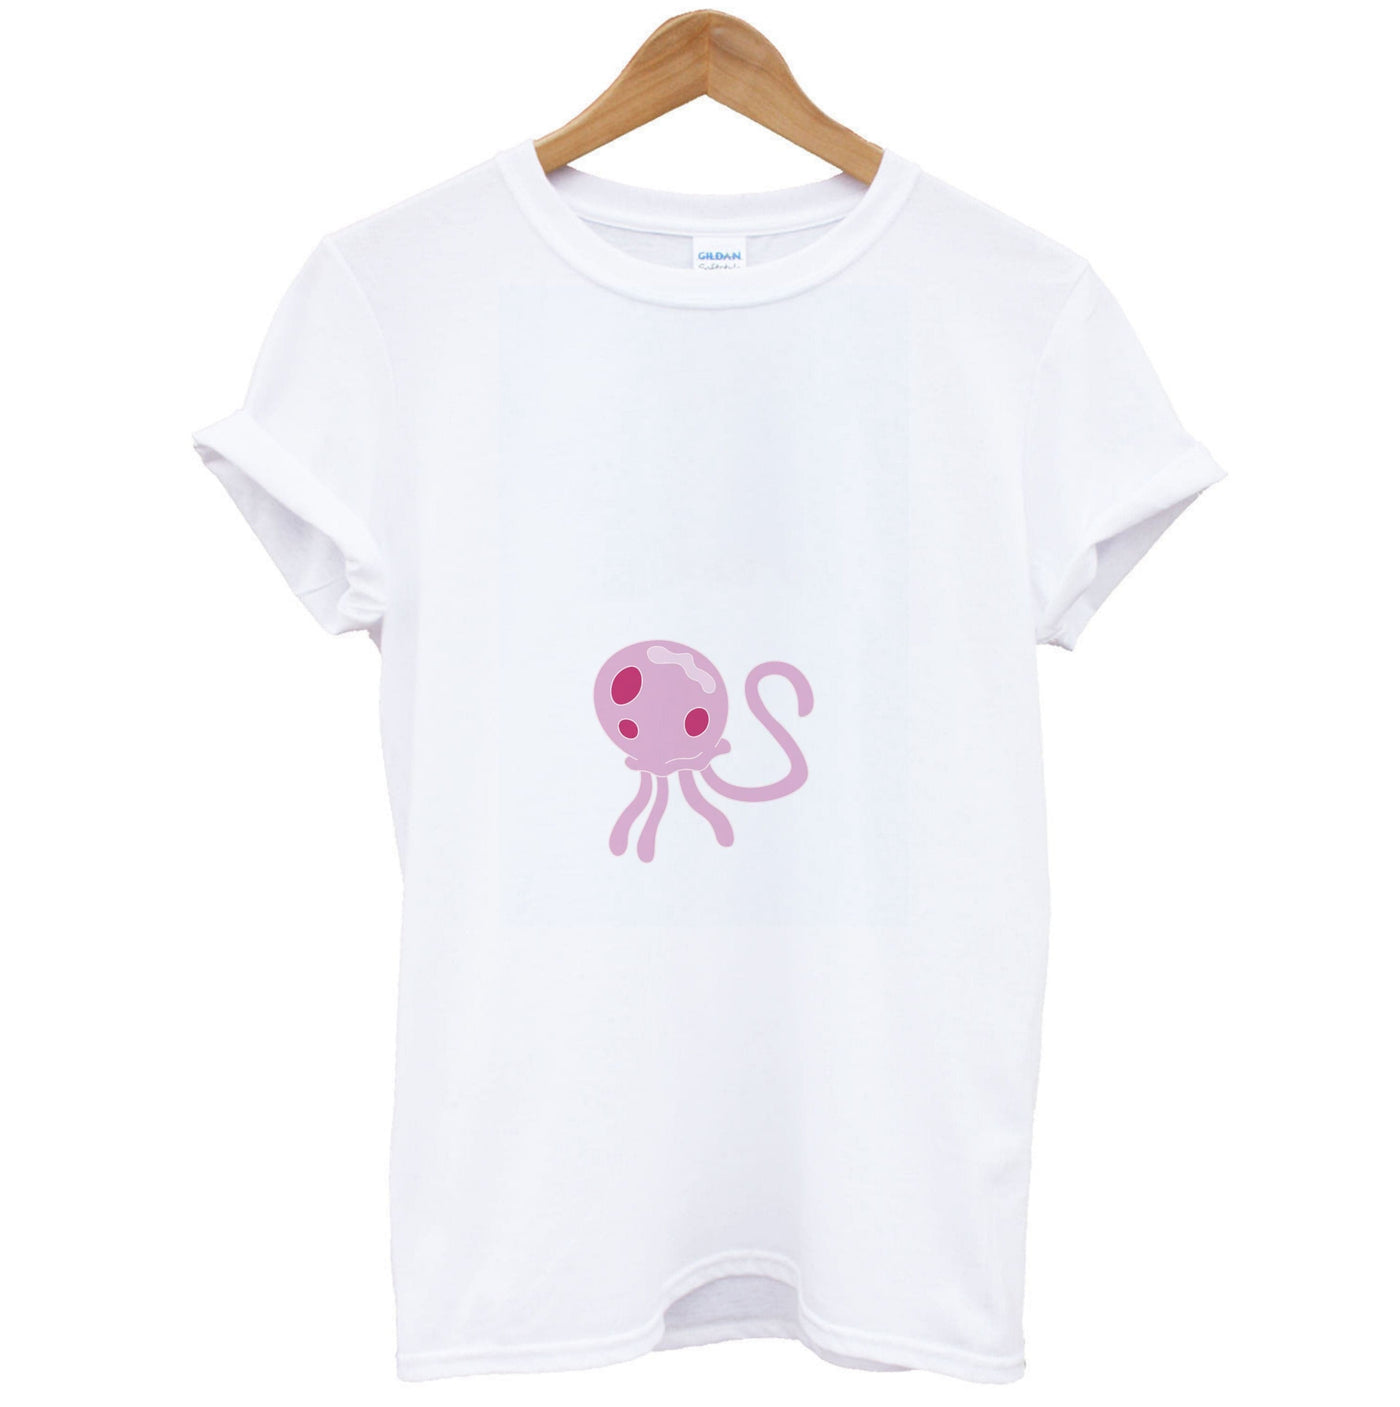 Queen Jelly - Spongebob T-Shirt